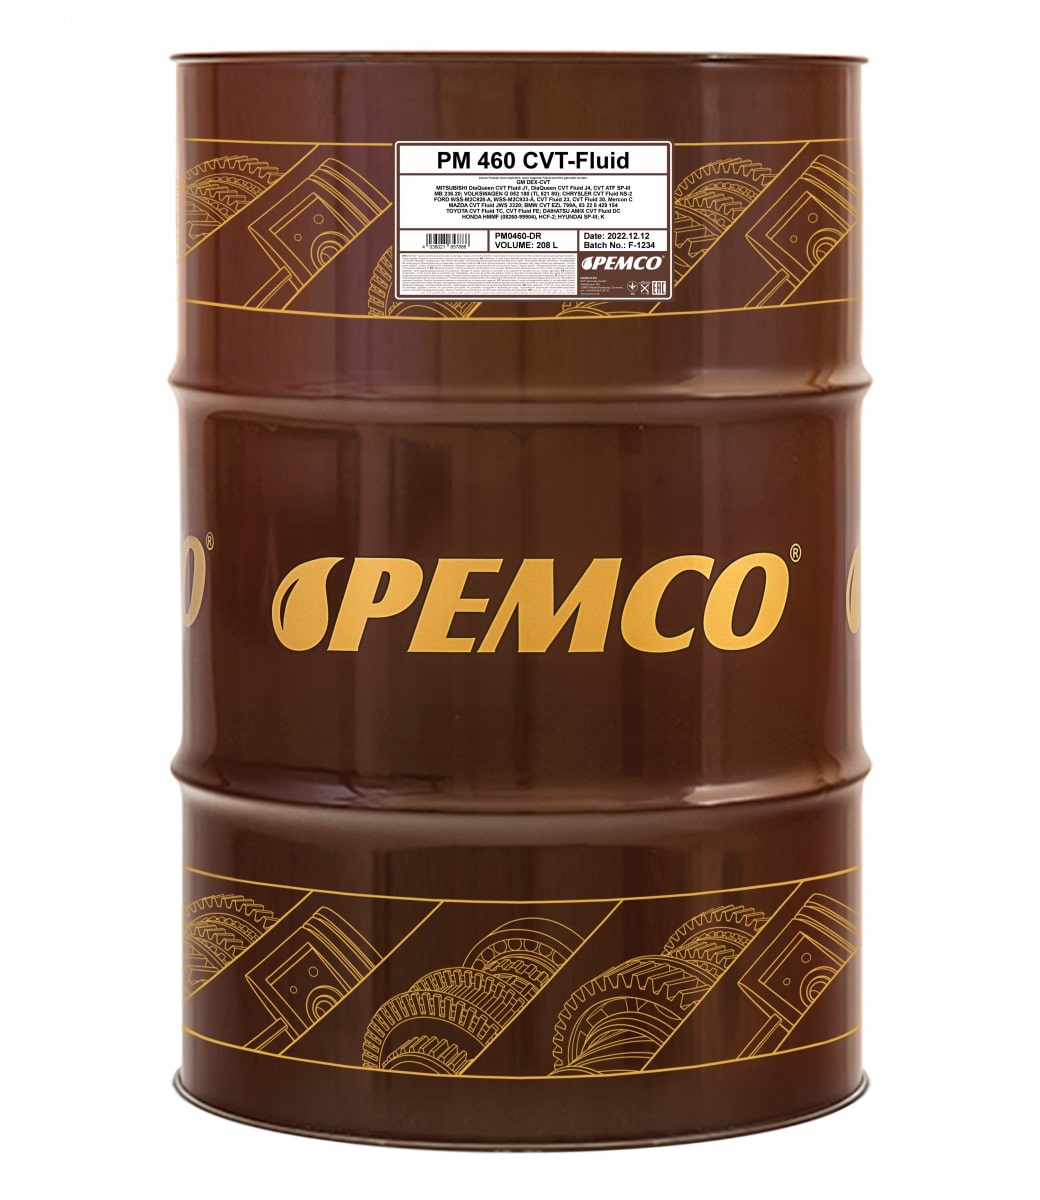  PEMCO 460 CVT-Fluid